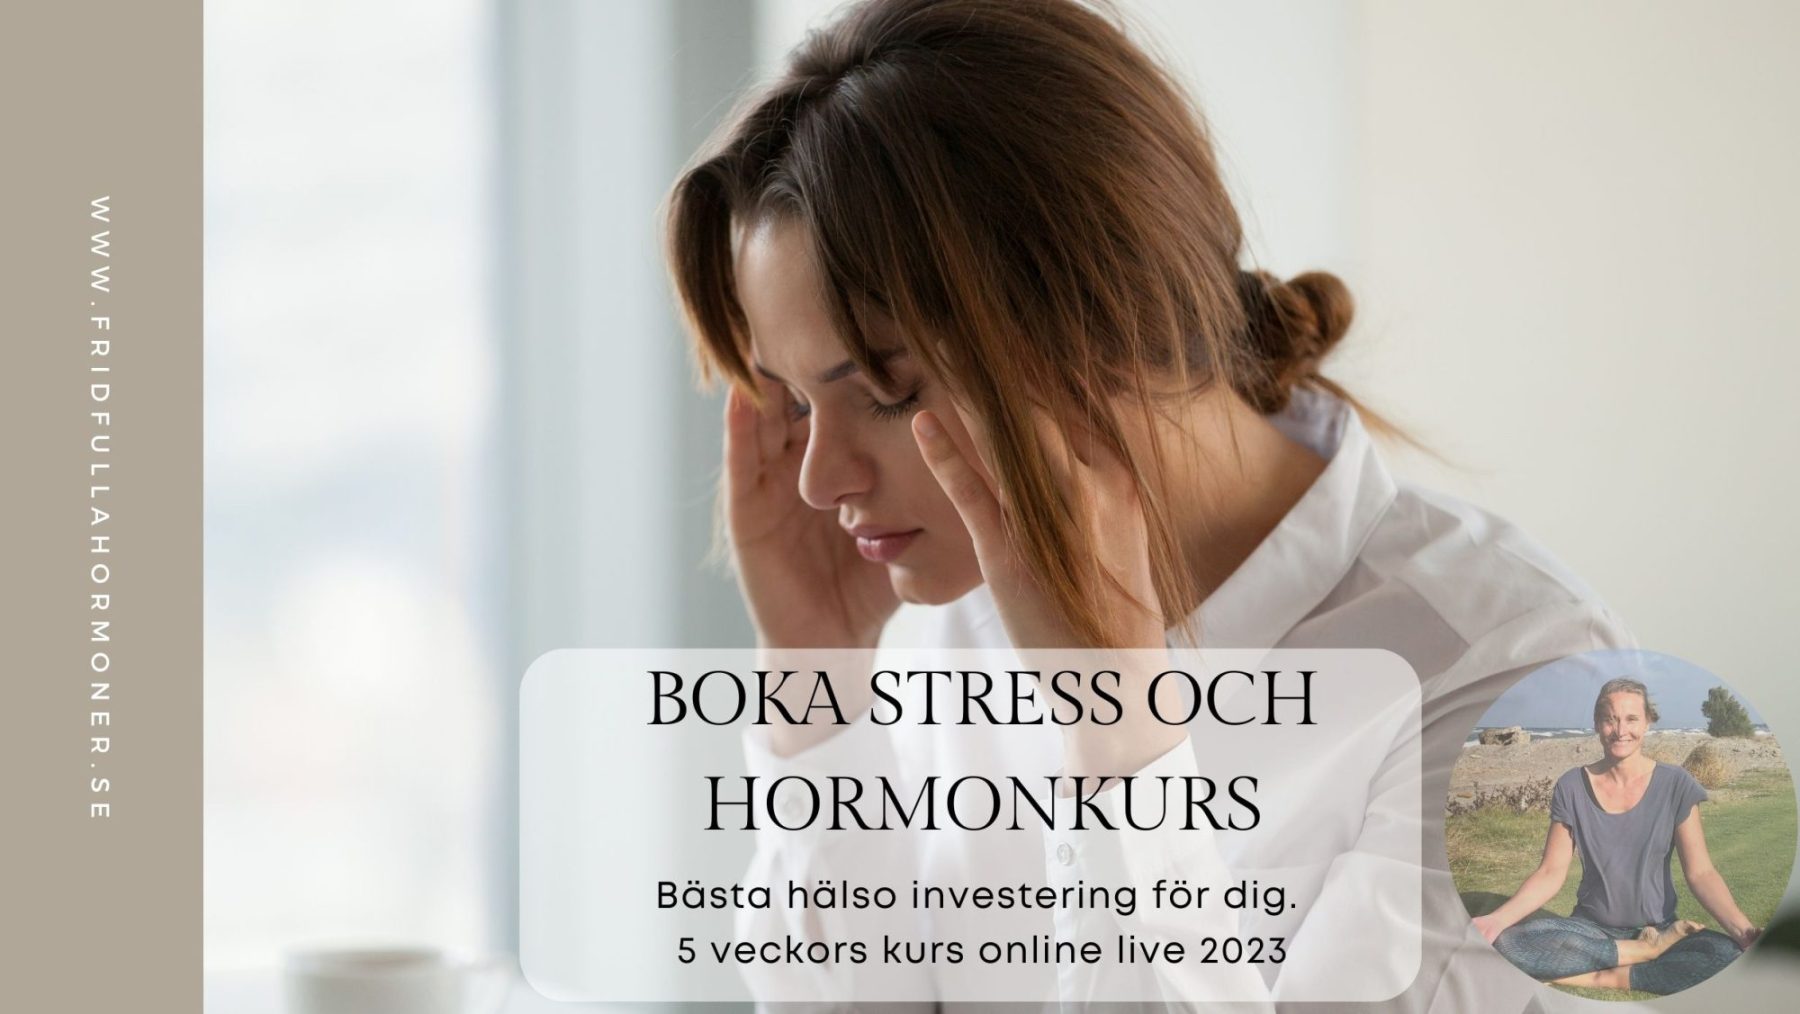 BOKA stress och hormonkurs